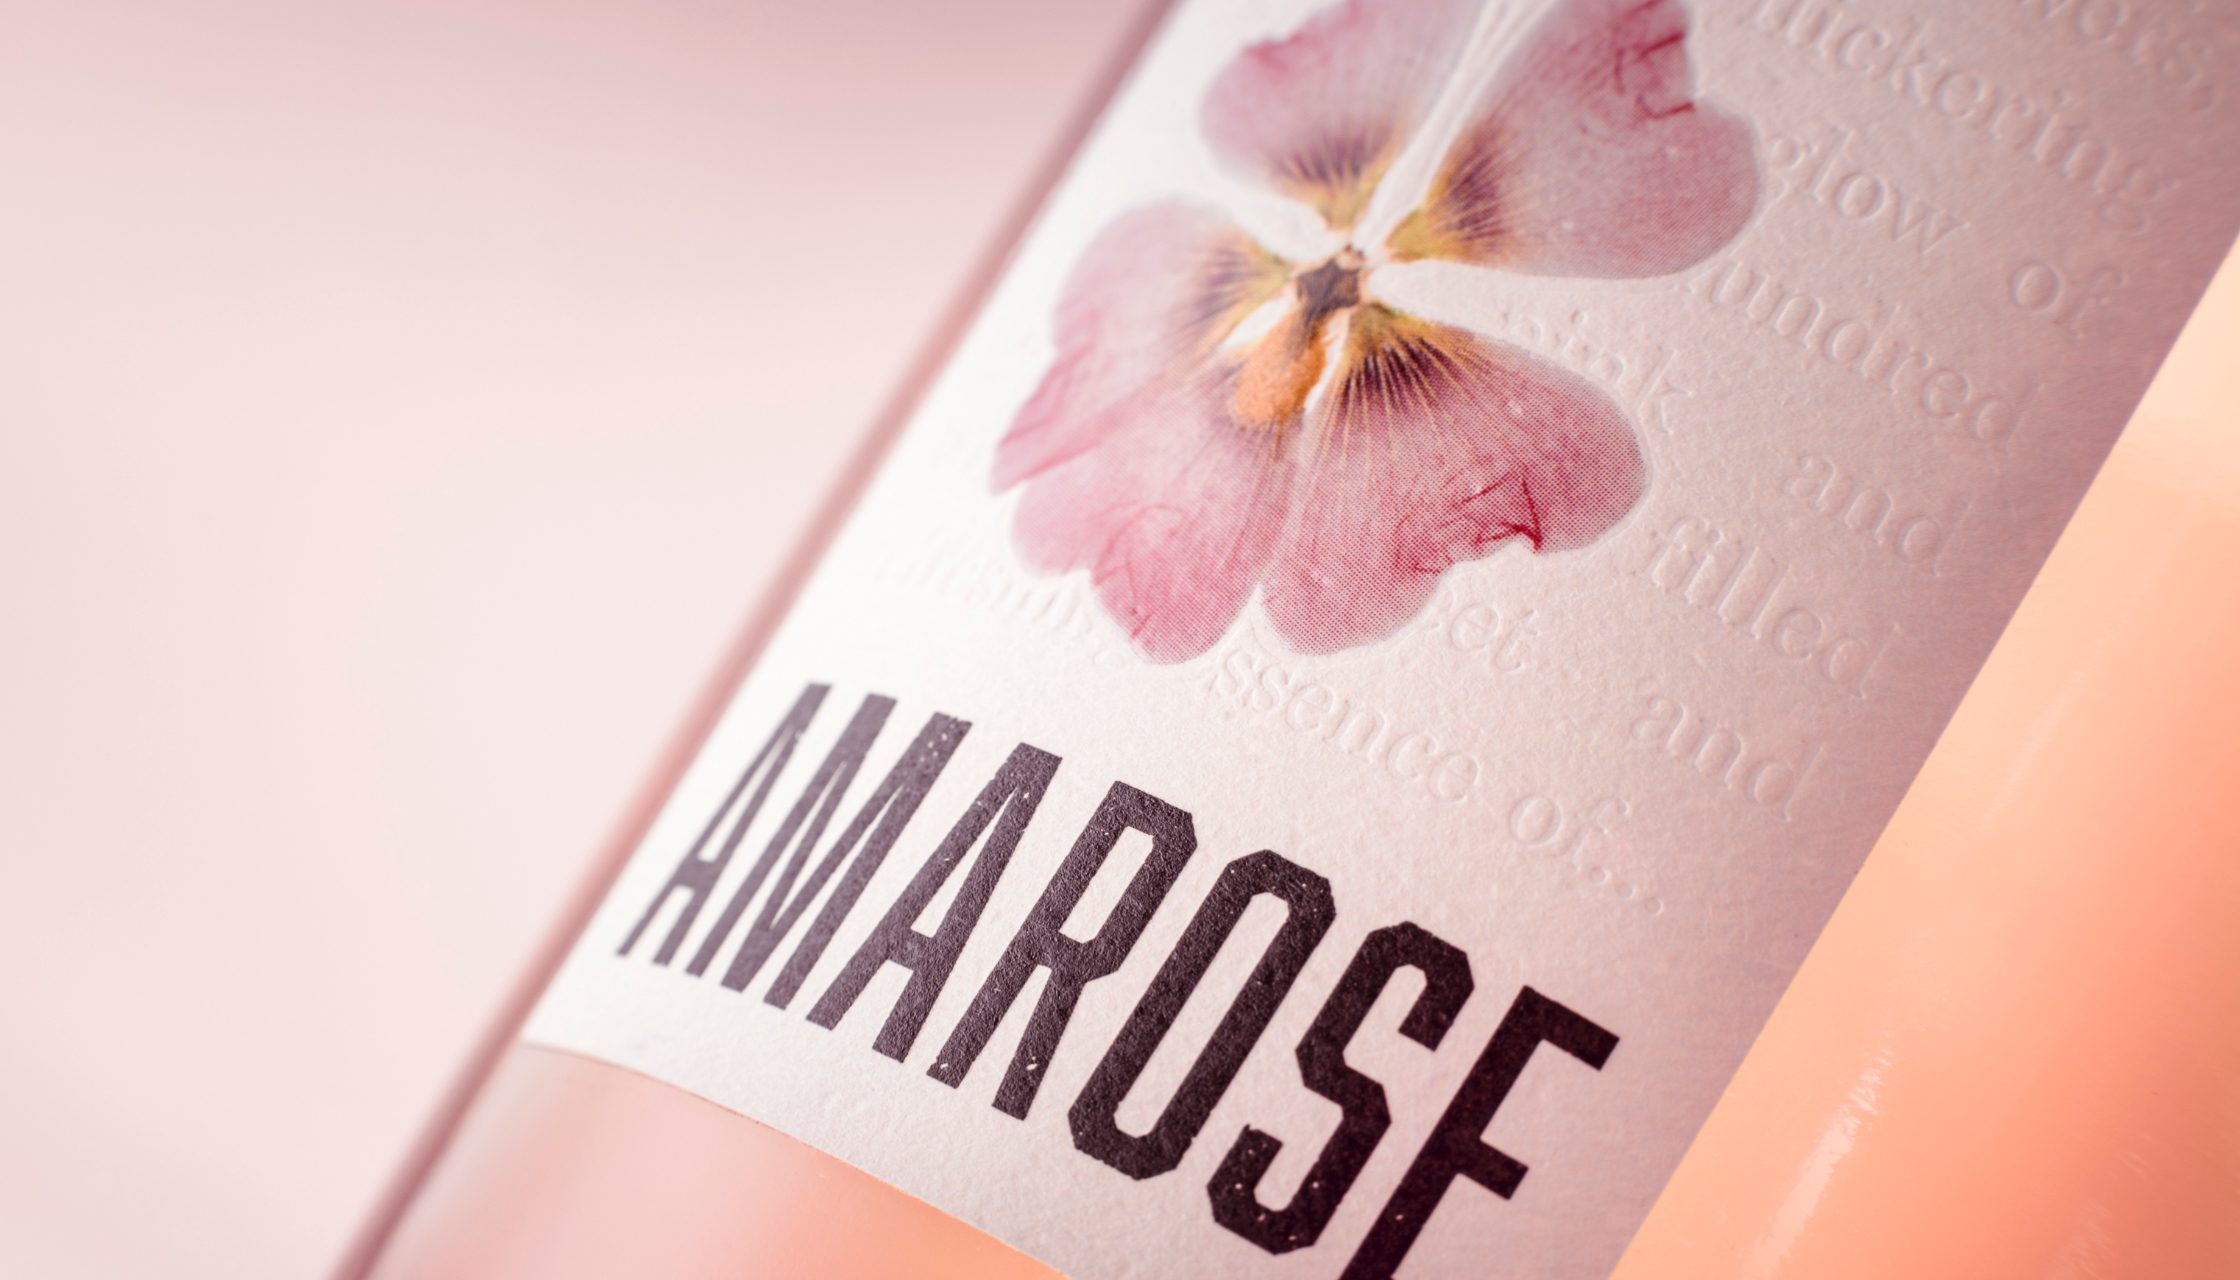 Amarose wine bottle label design